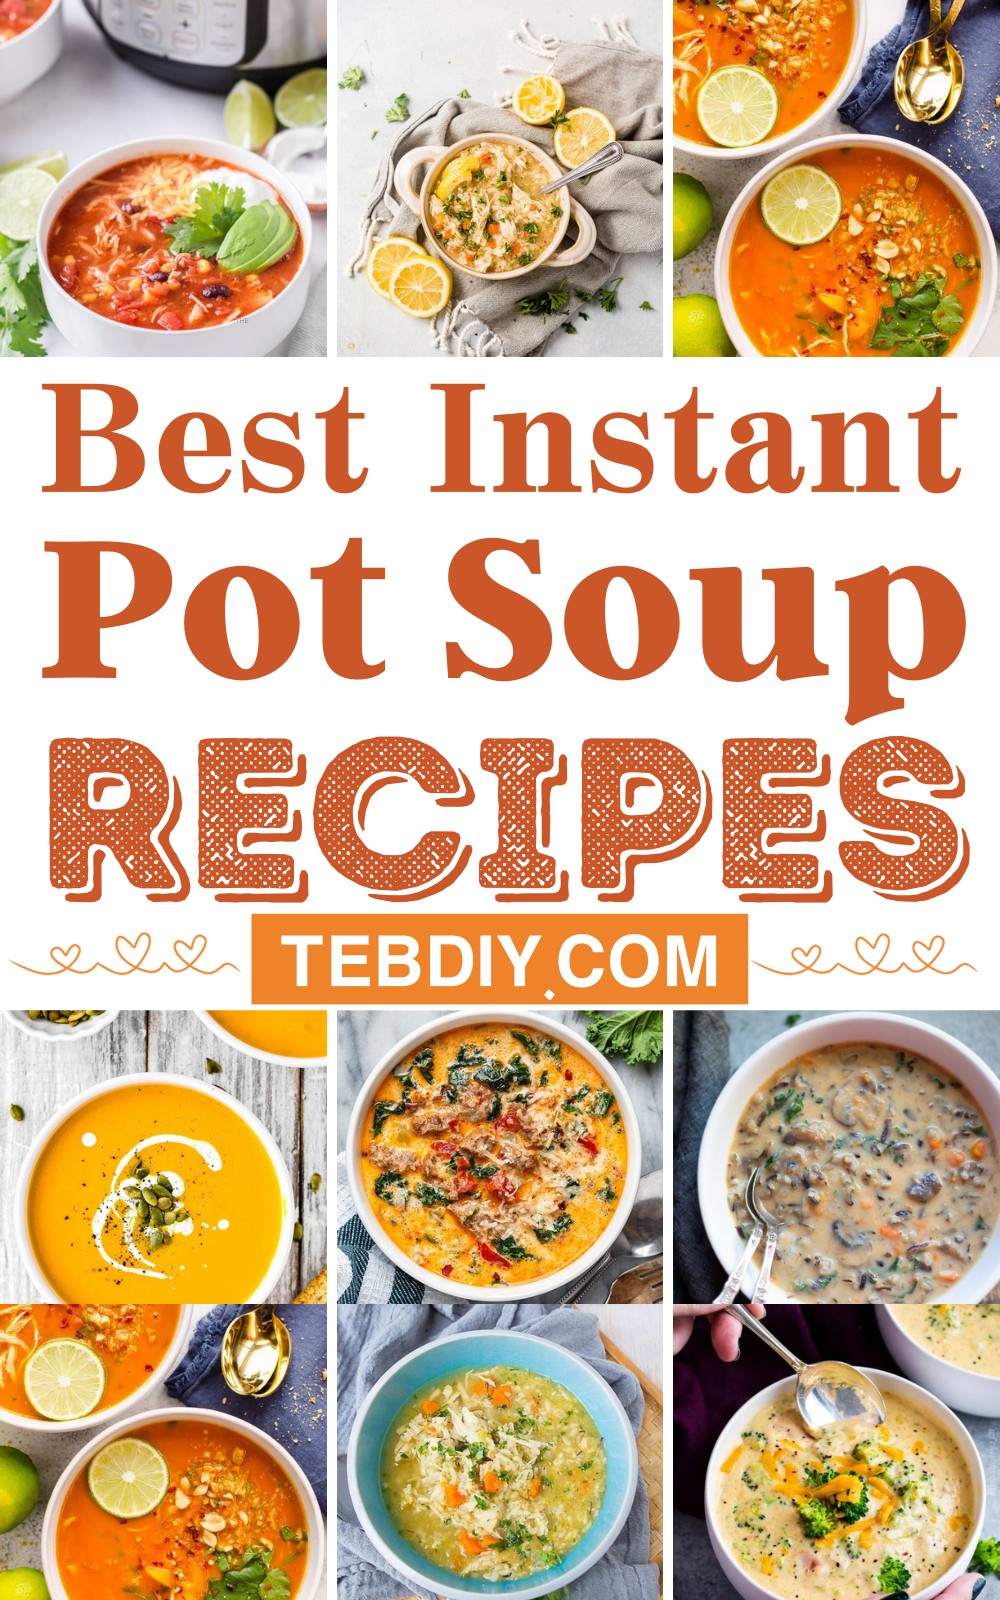 Best Instant Pot Soup Recipes